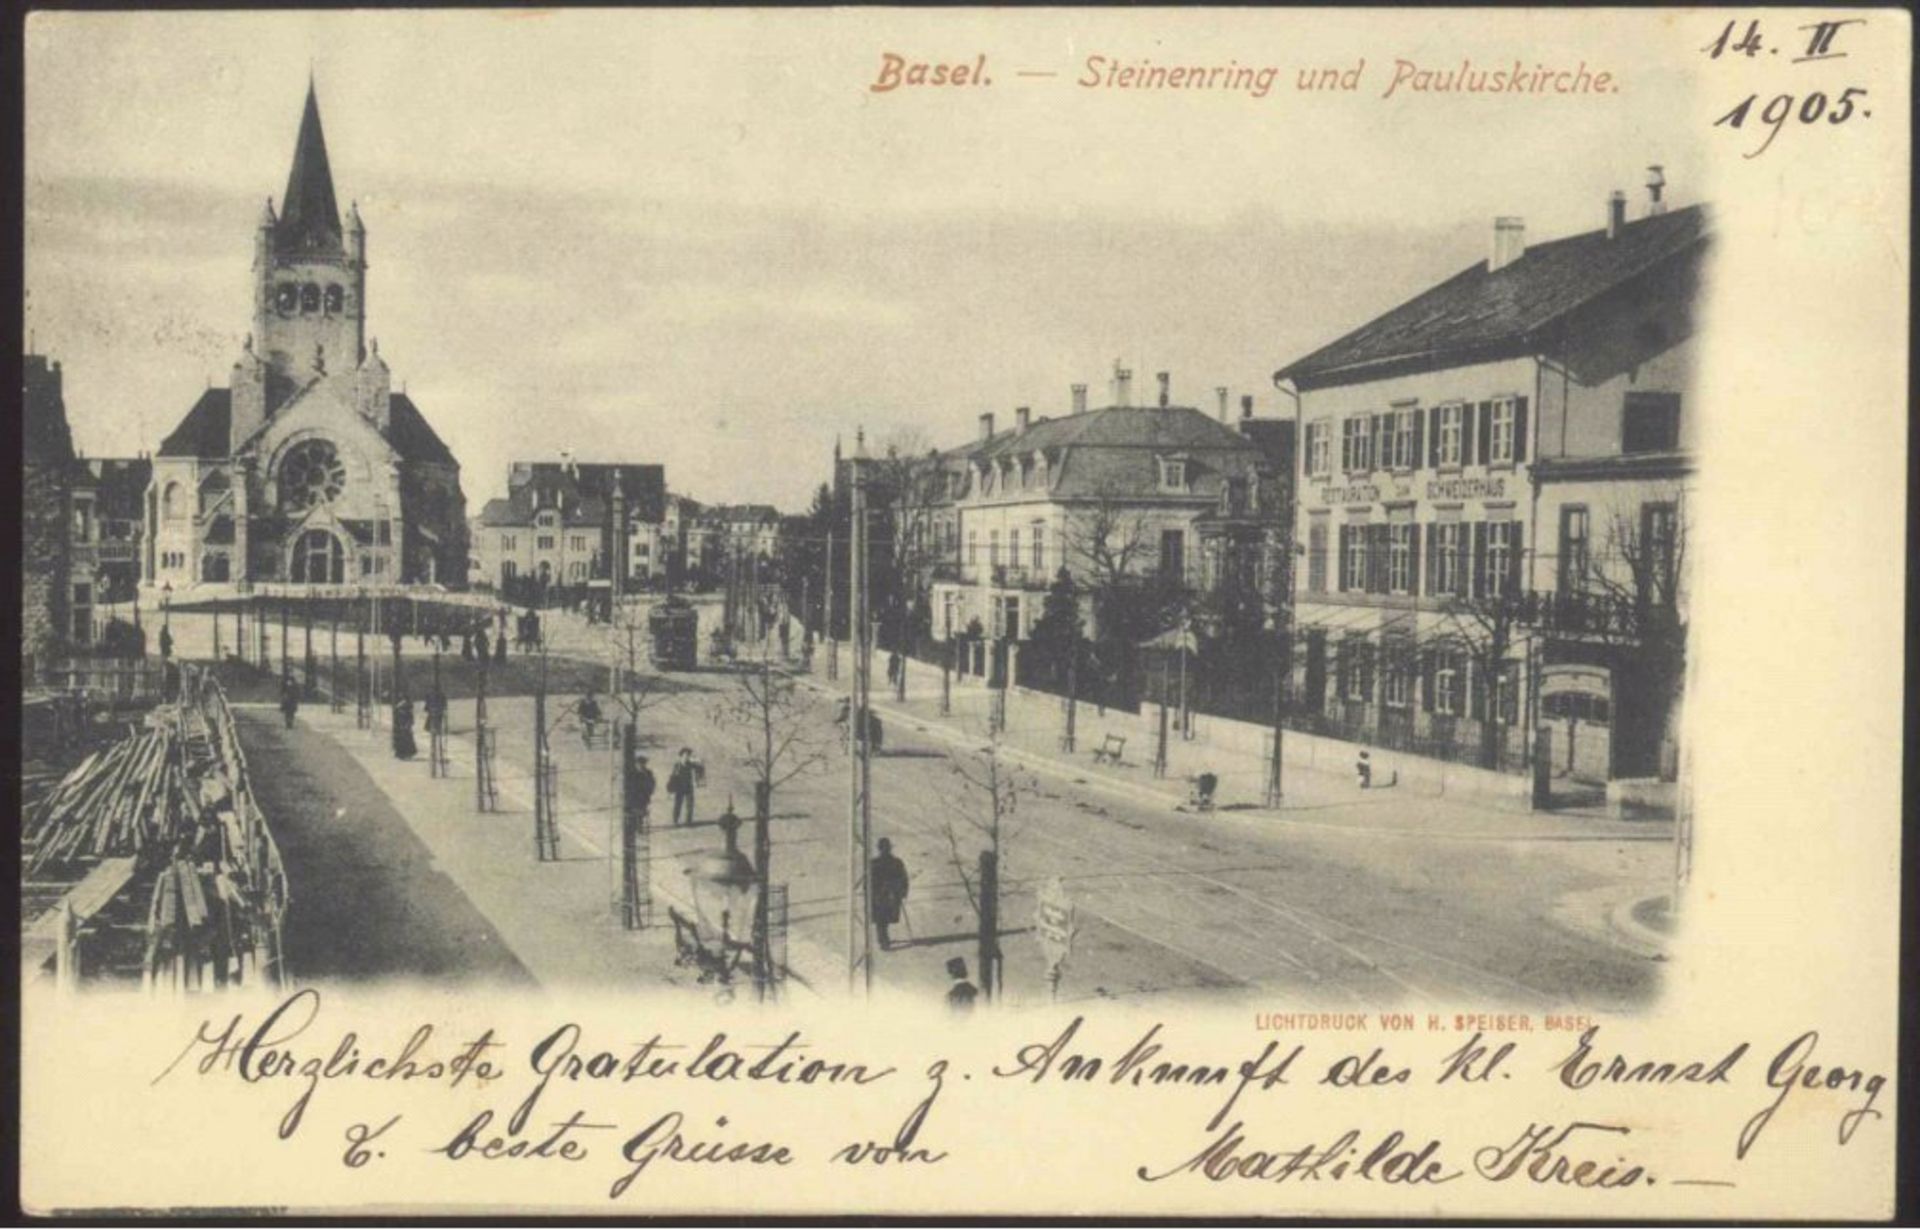 1905 Schweiz, Ansichtskarte Basel Steinenring/Pauluskirchegelaufene schwarz/weiße Ansichtskarte